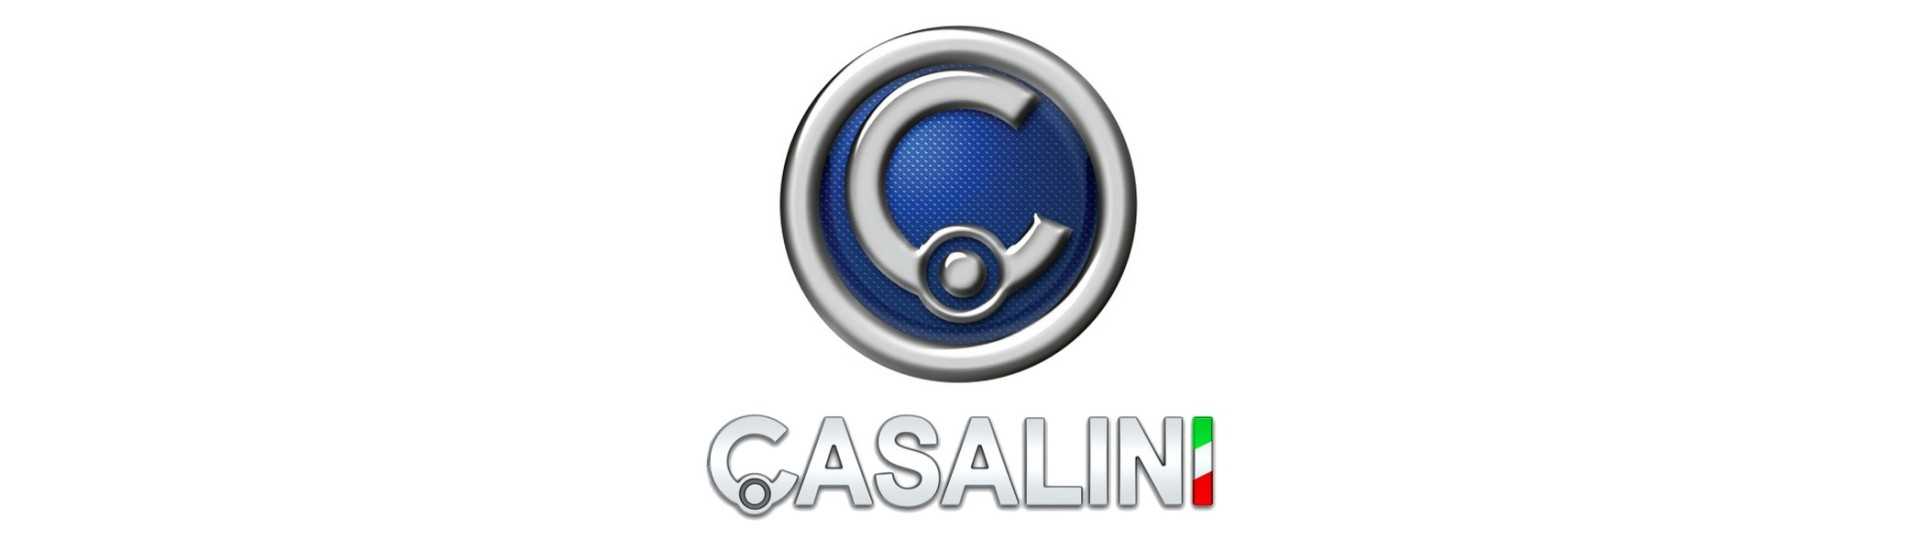 Aireador al mejor precio para coche sin carnet Casalini